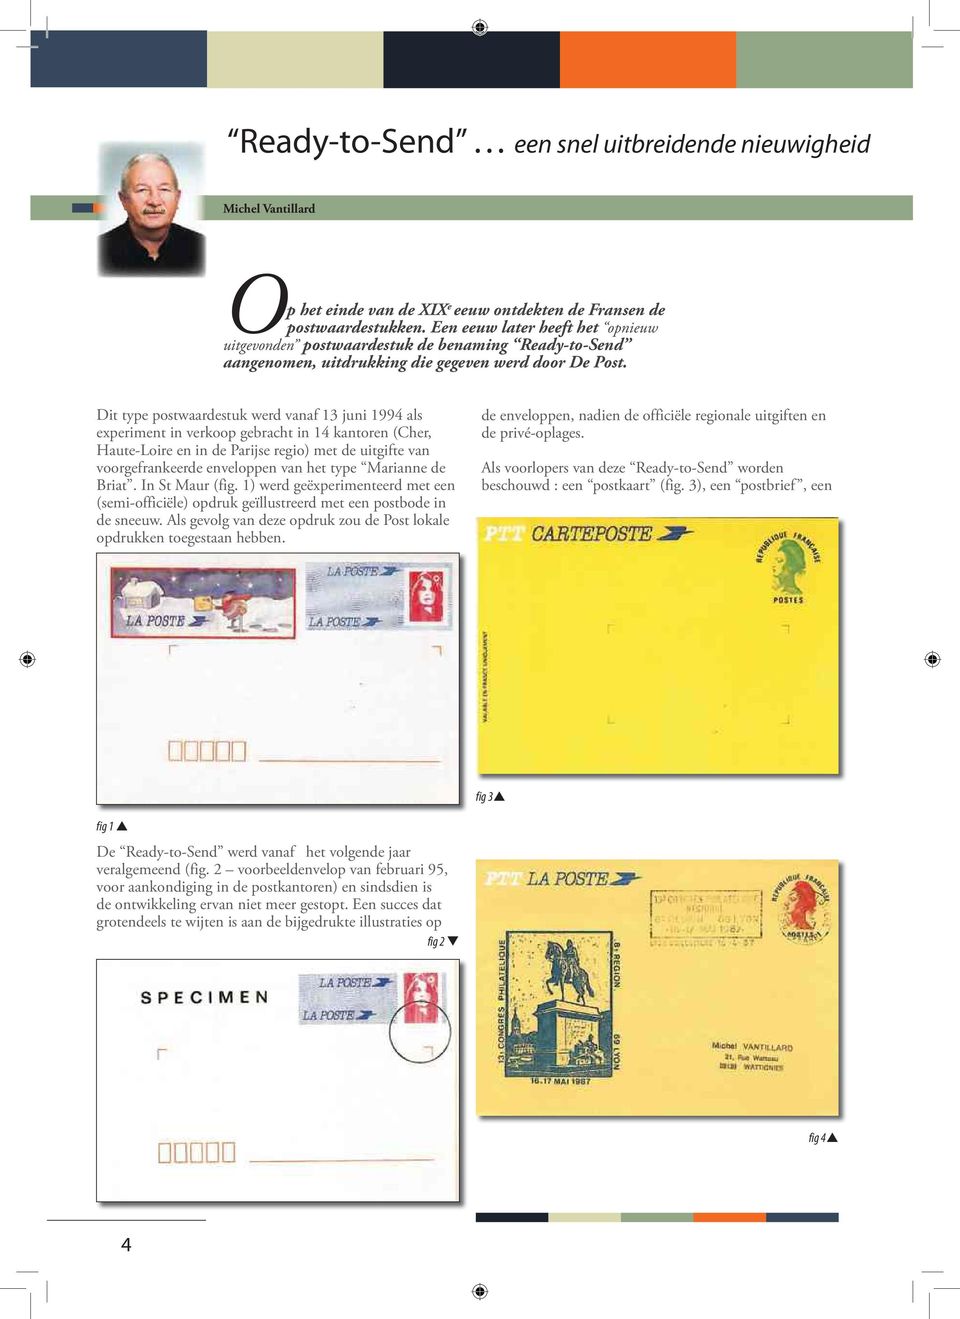 Dit type postwaardestuk werd vanaf 13 juni 1994 als experiment in verkoop gebracht in 14 kantoren (Cher, Haute-Loire en in de Parijse regio) met de uitgifte van voorgefrankeerde enveloppen van het